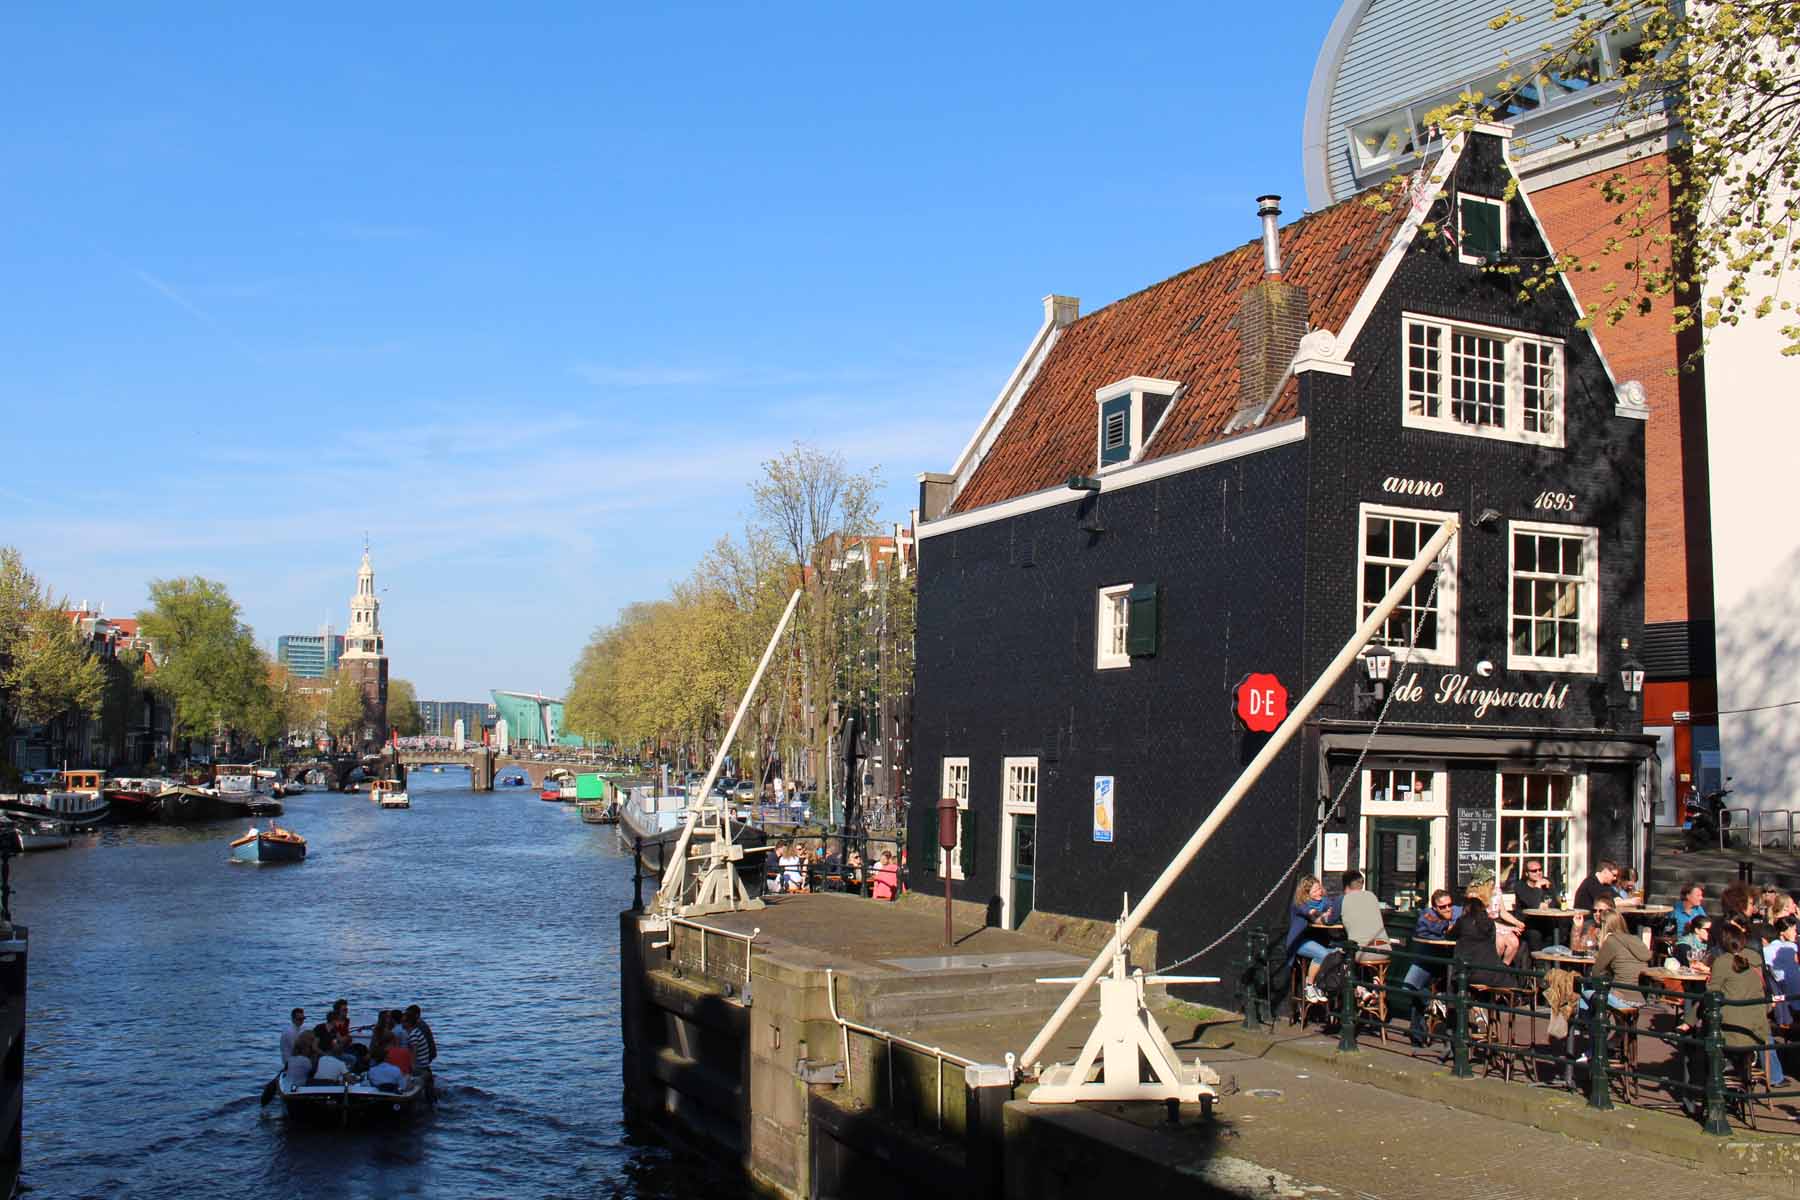 Amsterdam, café Sluyswacht, canal Oudeschans